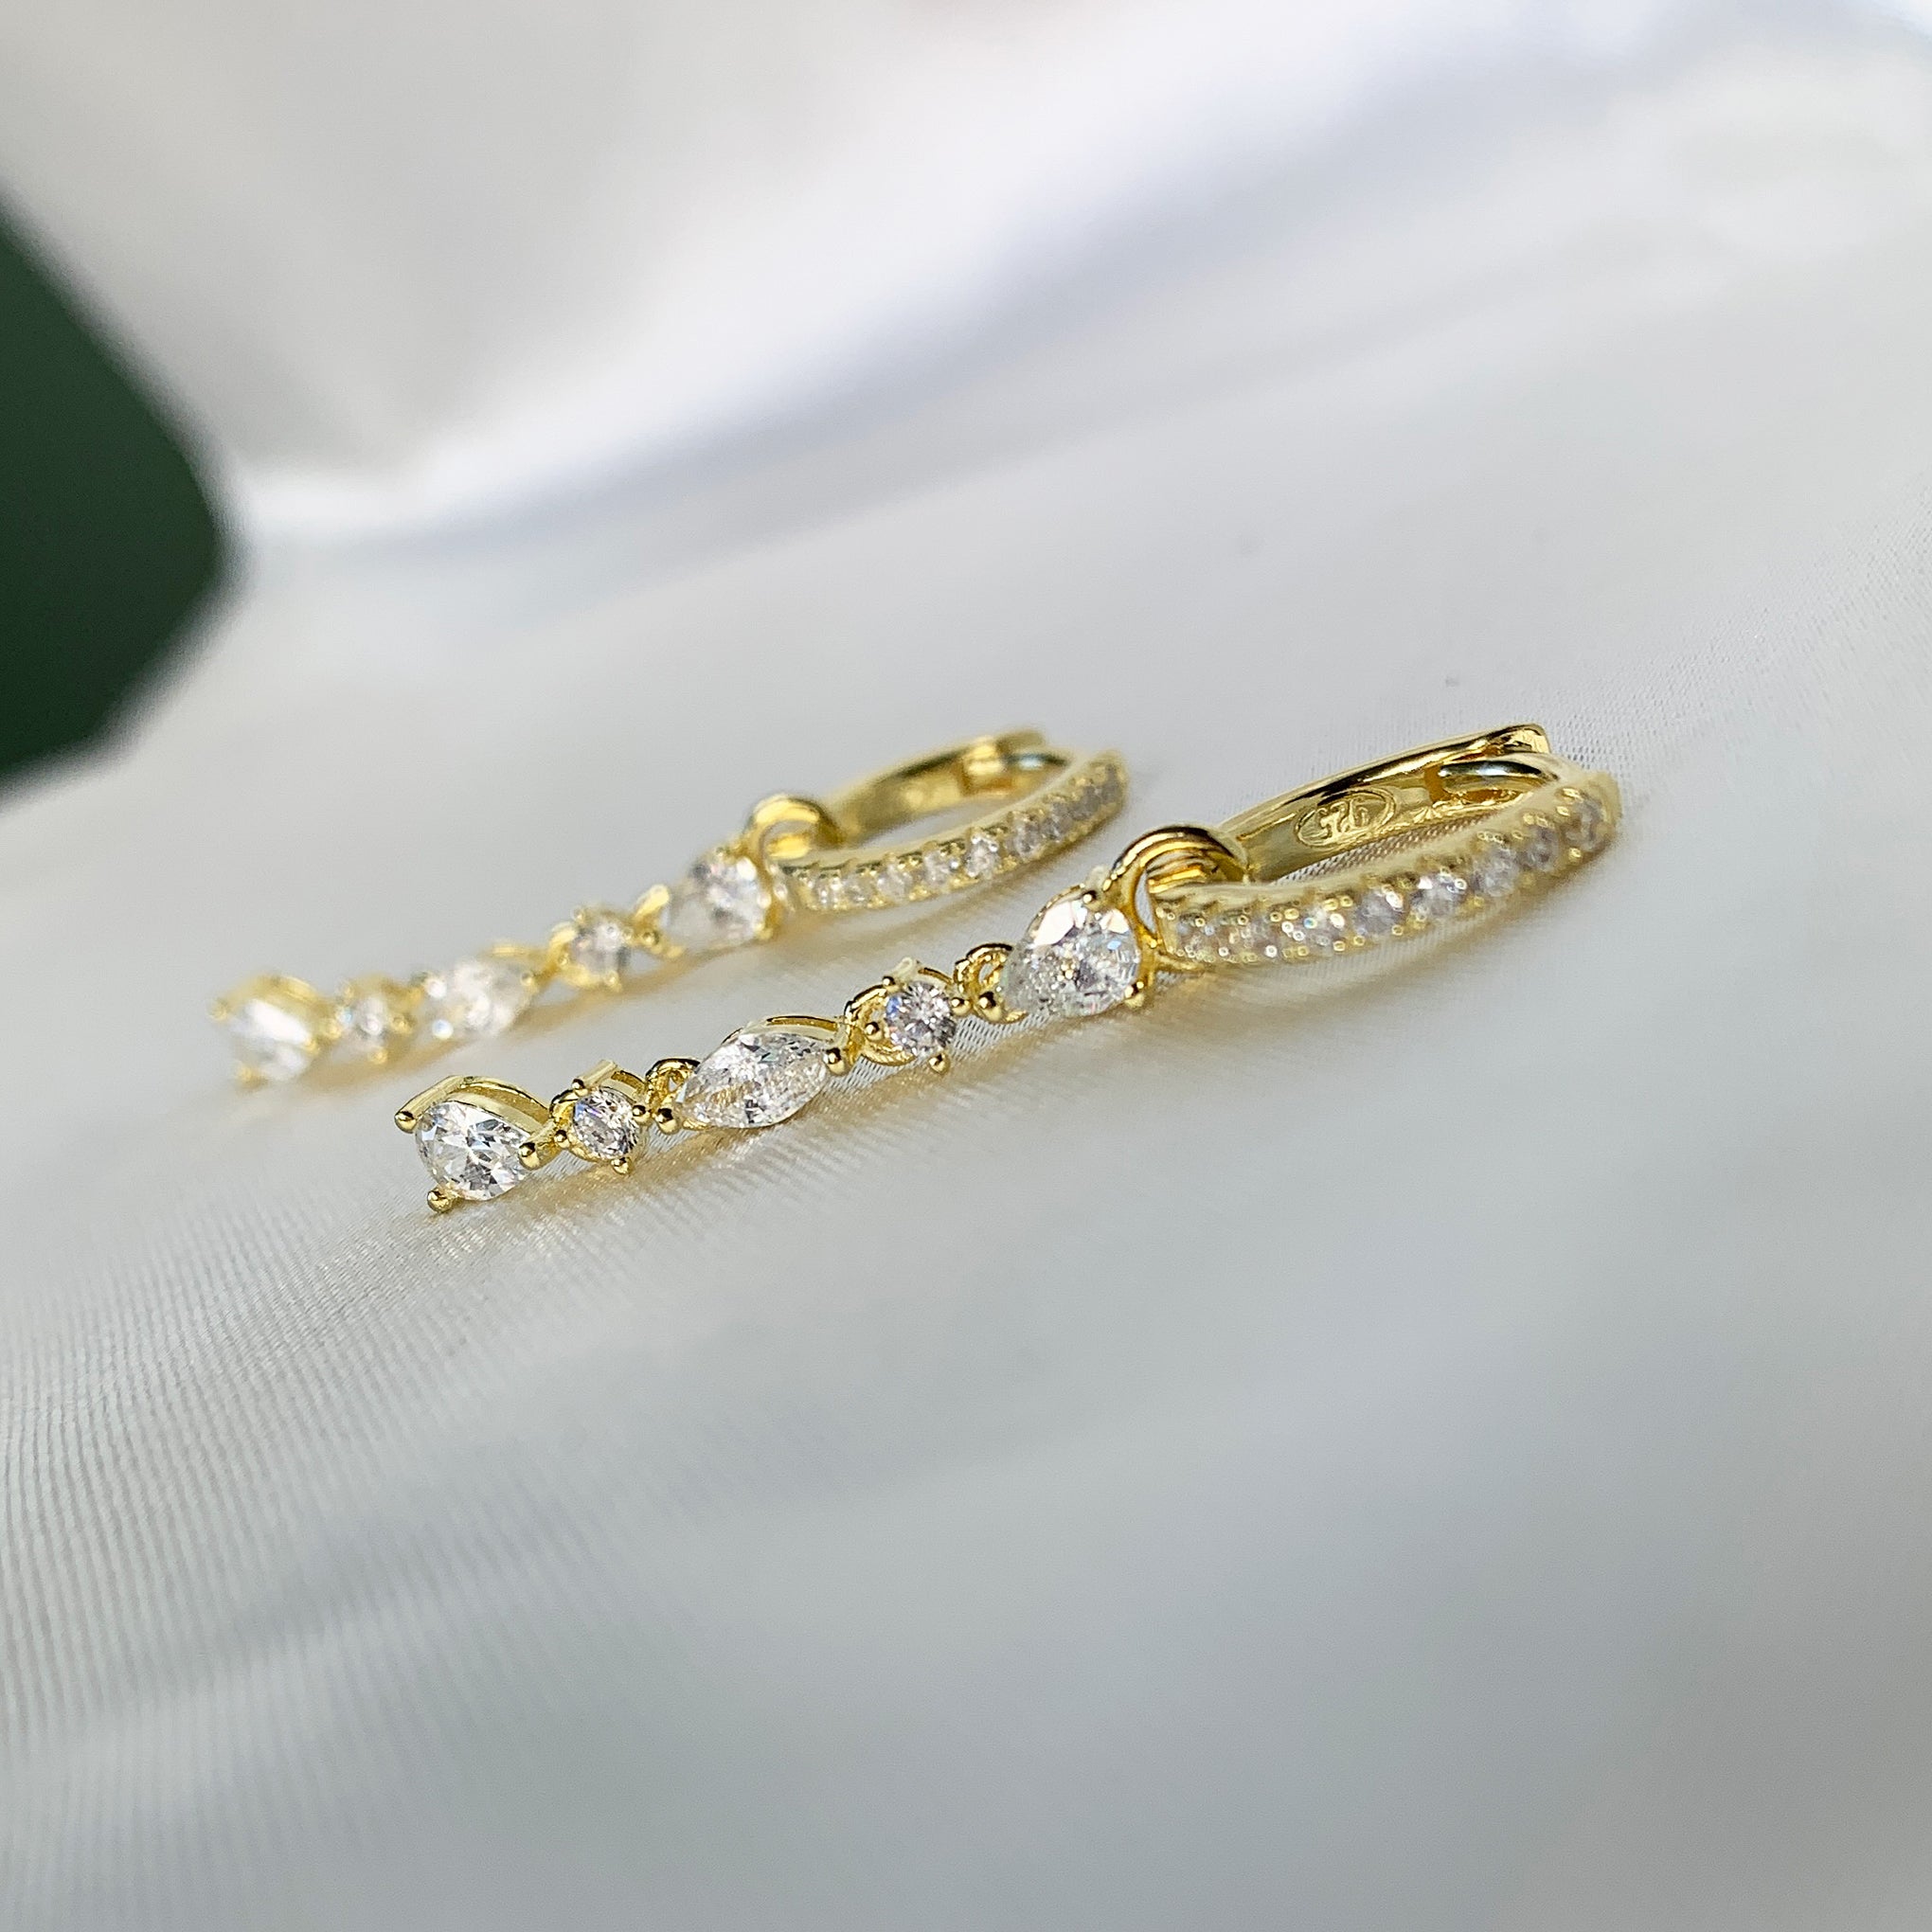 Adina Eden Multi Shape CZ Drop Huggie Hoop Earrings in 14k Gold Vermeil